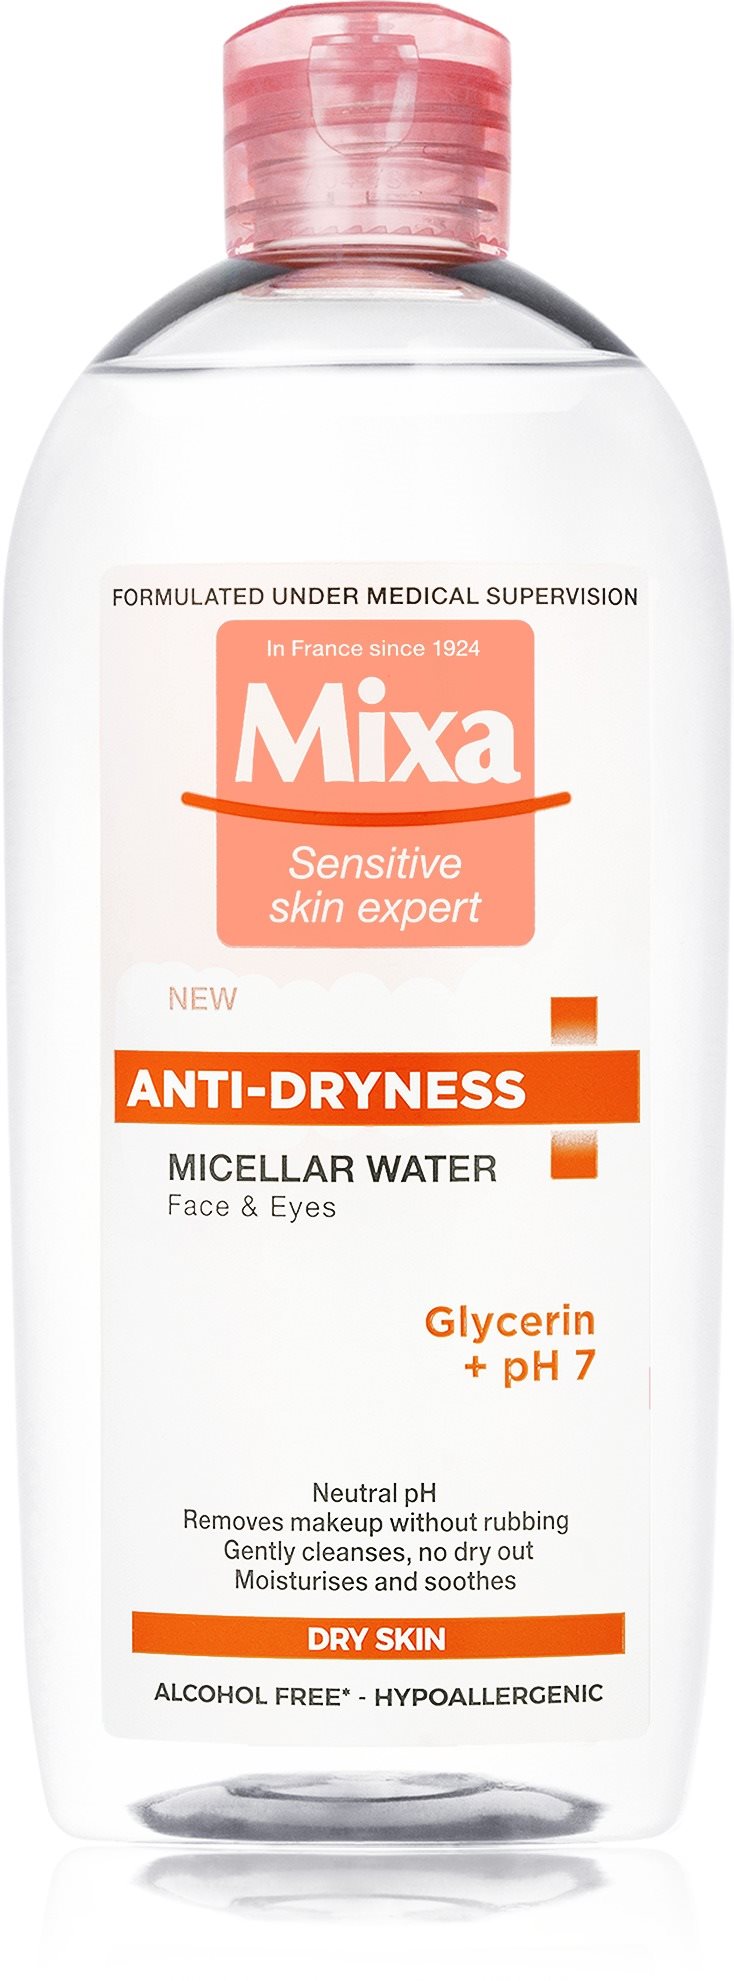 Micellás víz MIXA Anti-dryness micellás arctisztító